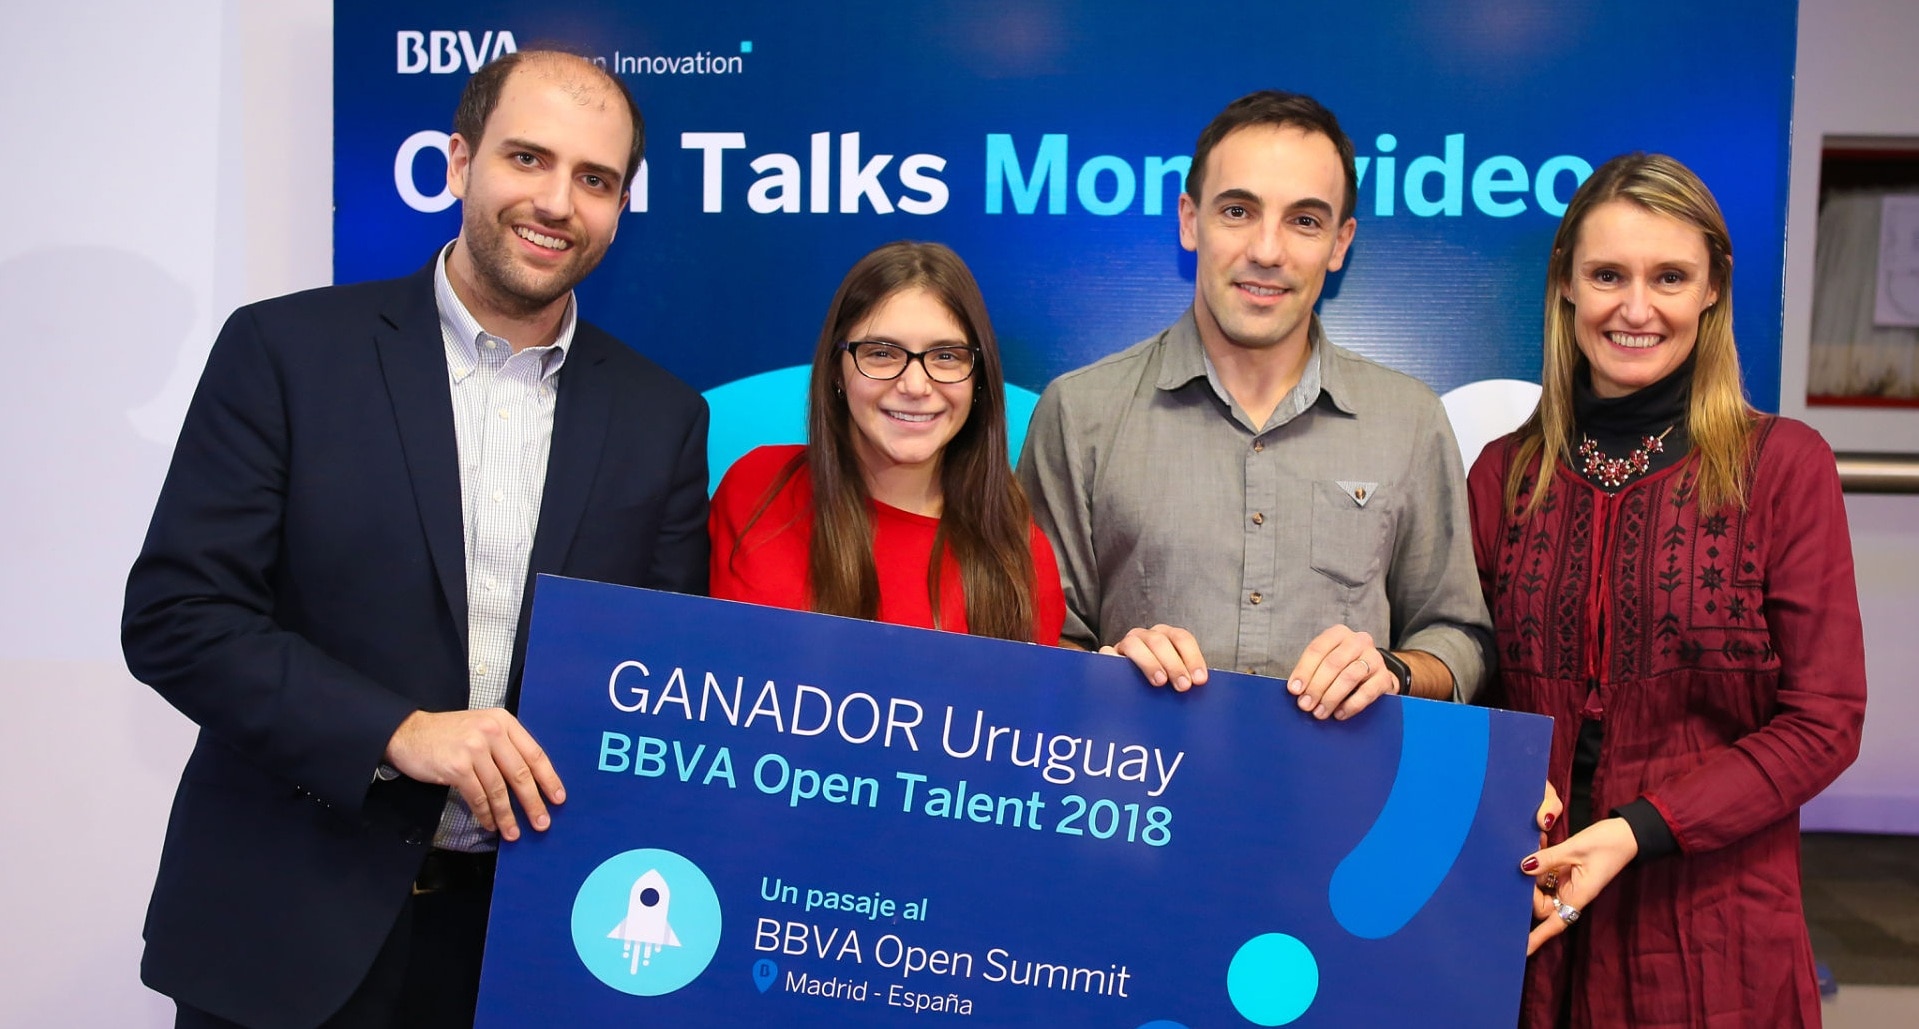 Fotografía de MiFinanzas, Ganadores BBVA Open Talent Uruguay 2018